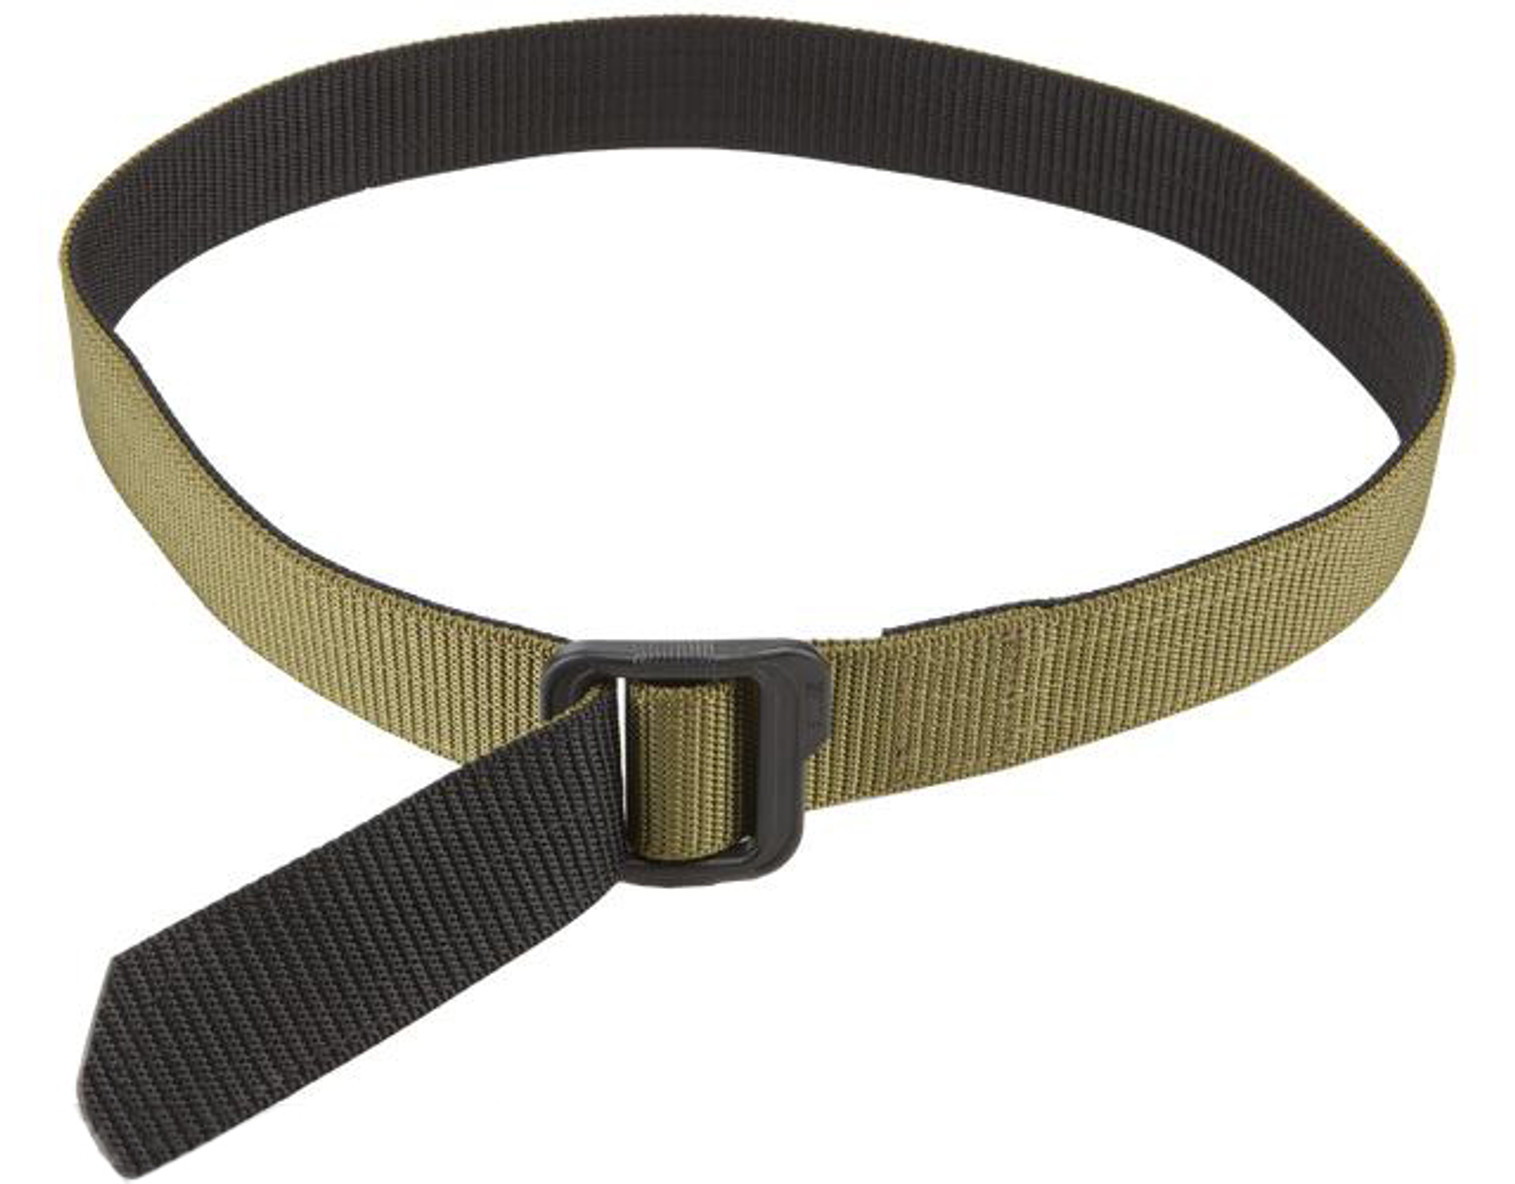 5.11 Tactical 1.5" Double Duty TDU Belt - TDU Green / Black (Size: Large)